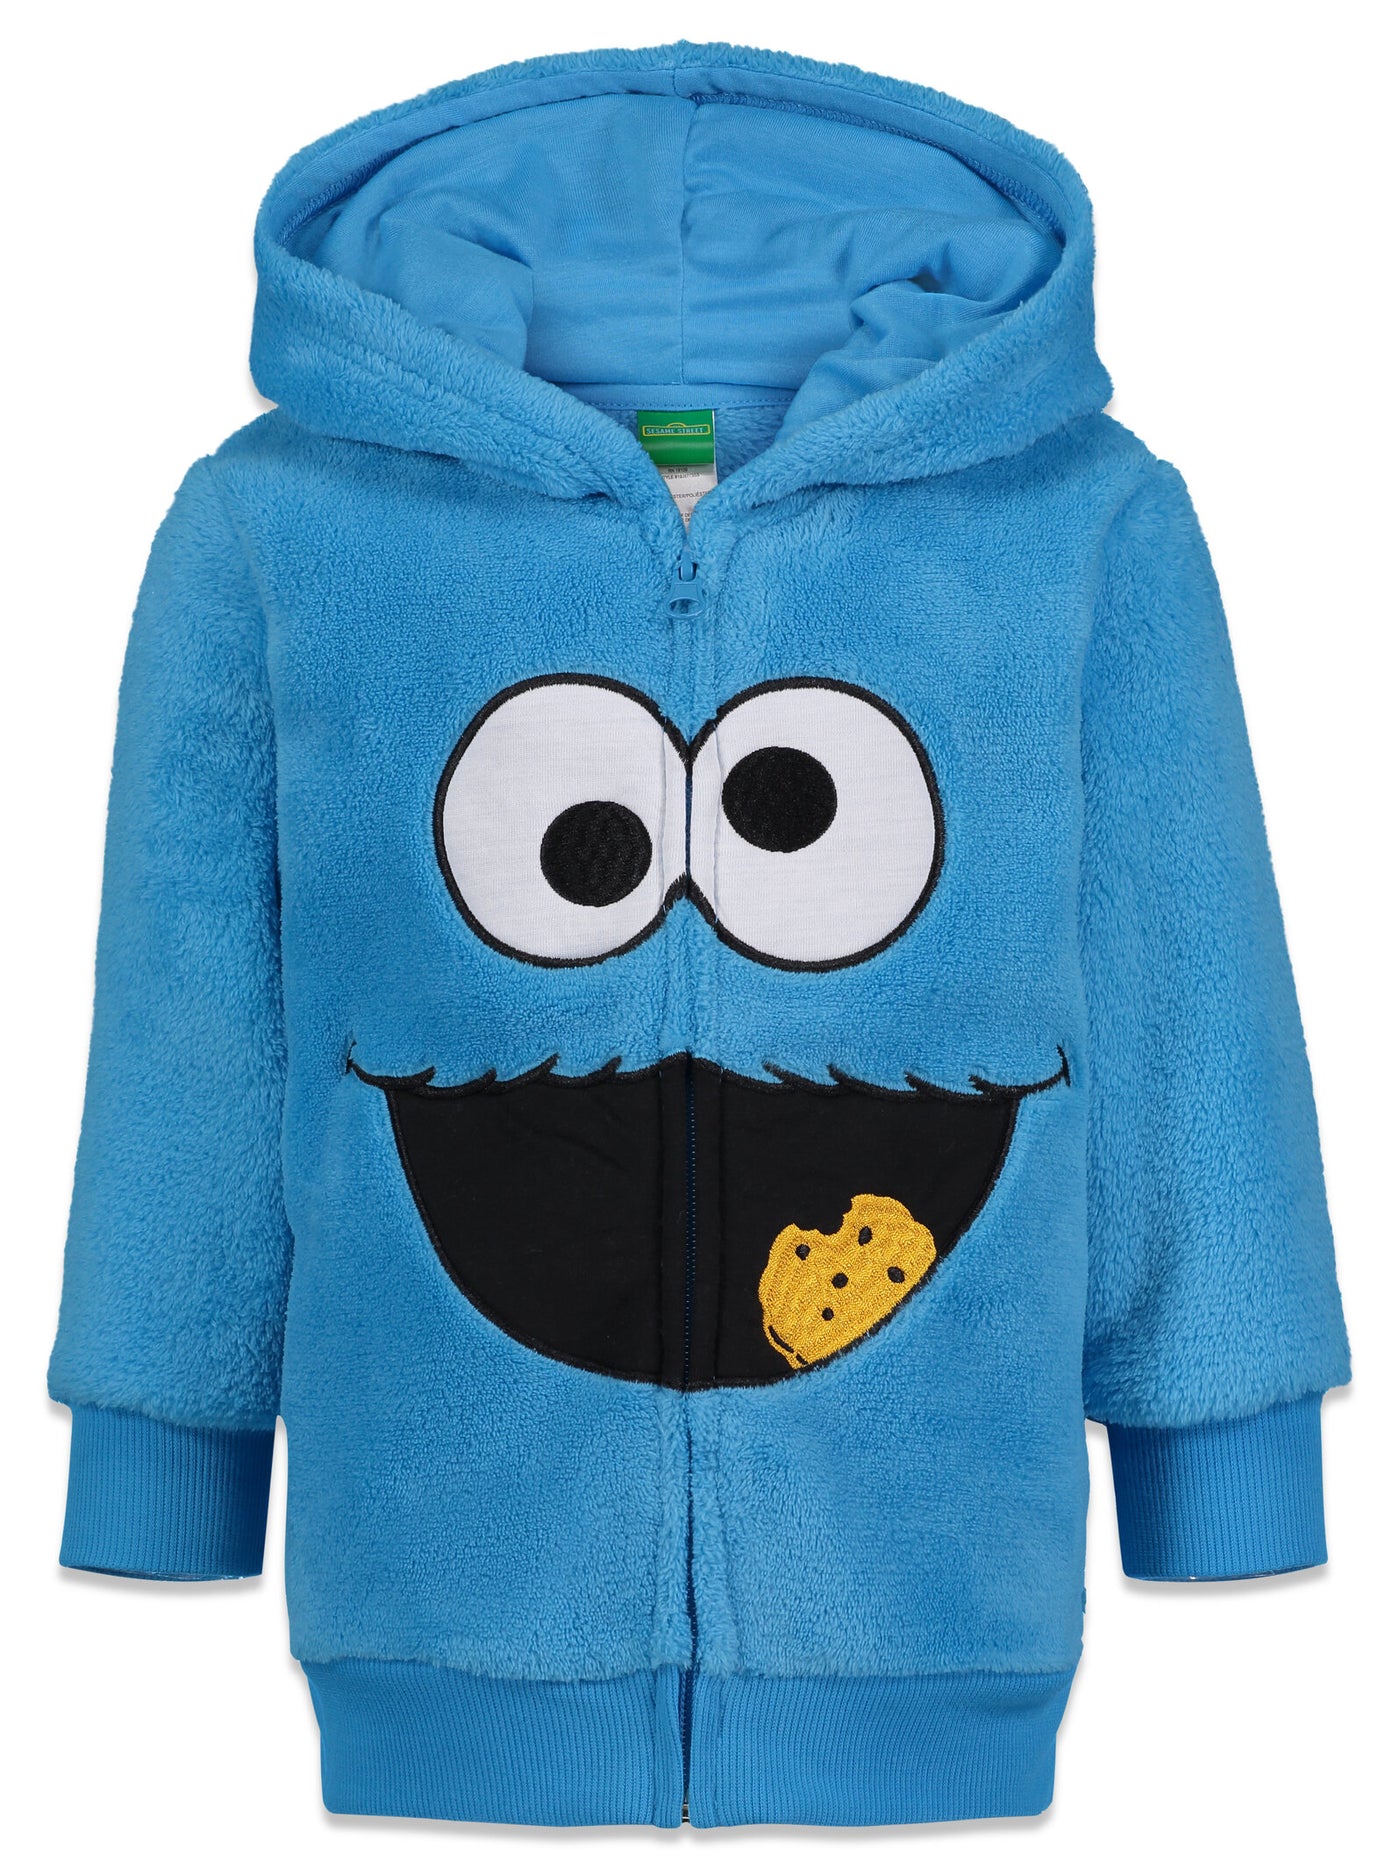 Sesame Street Cookie Monster Fleece Zip Up Hoodie